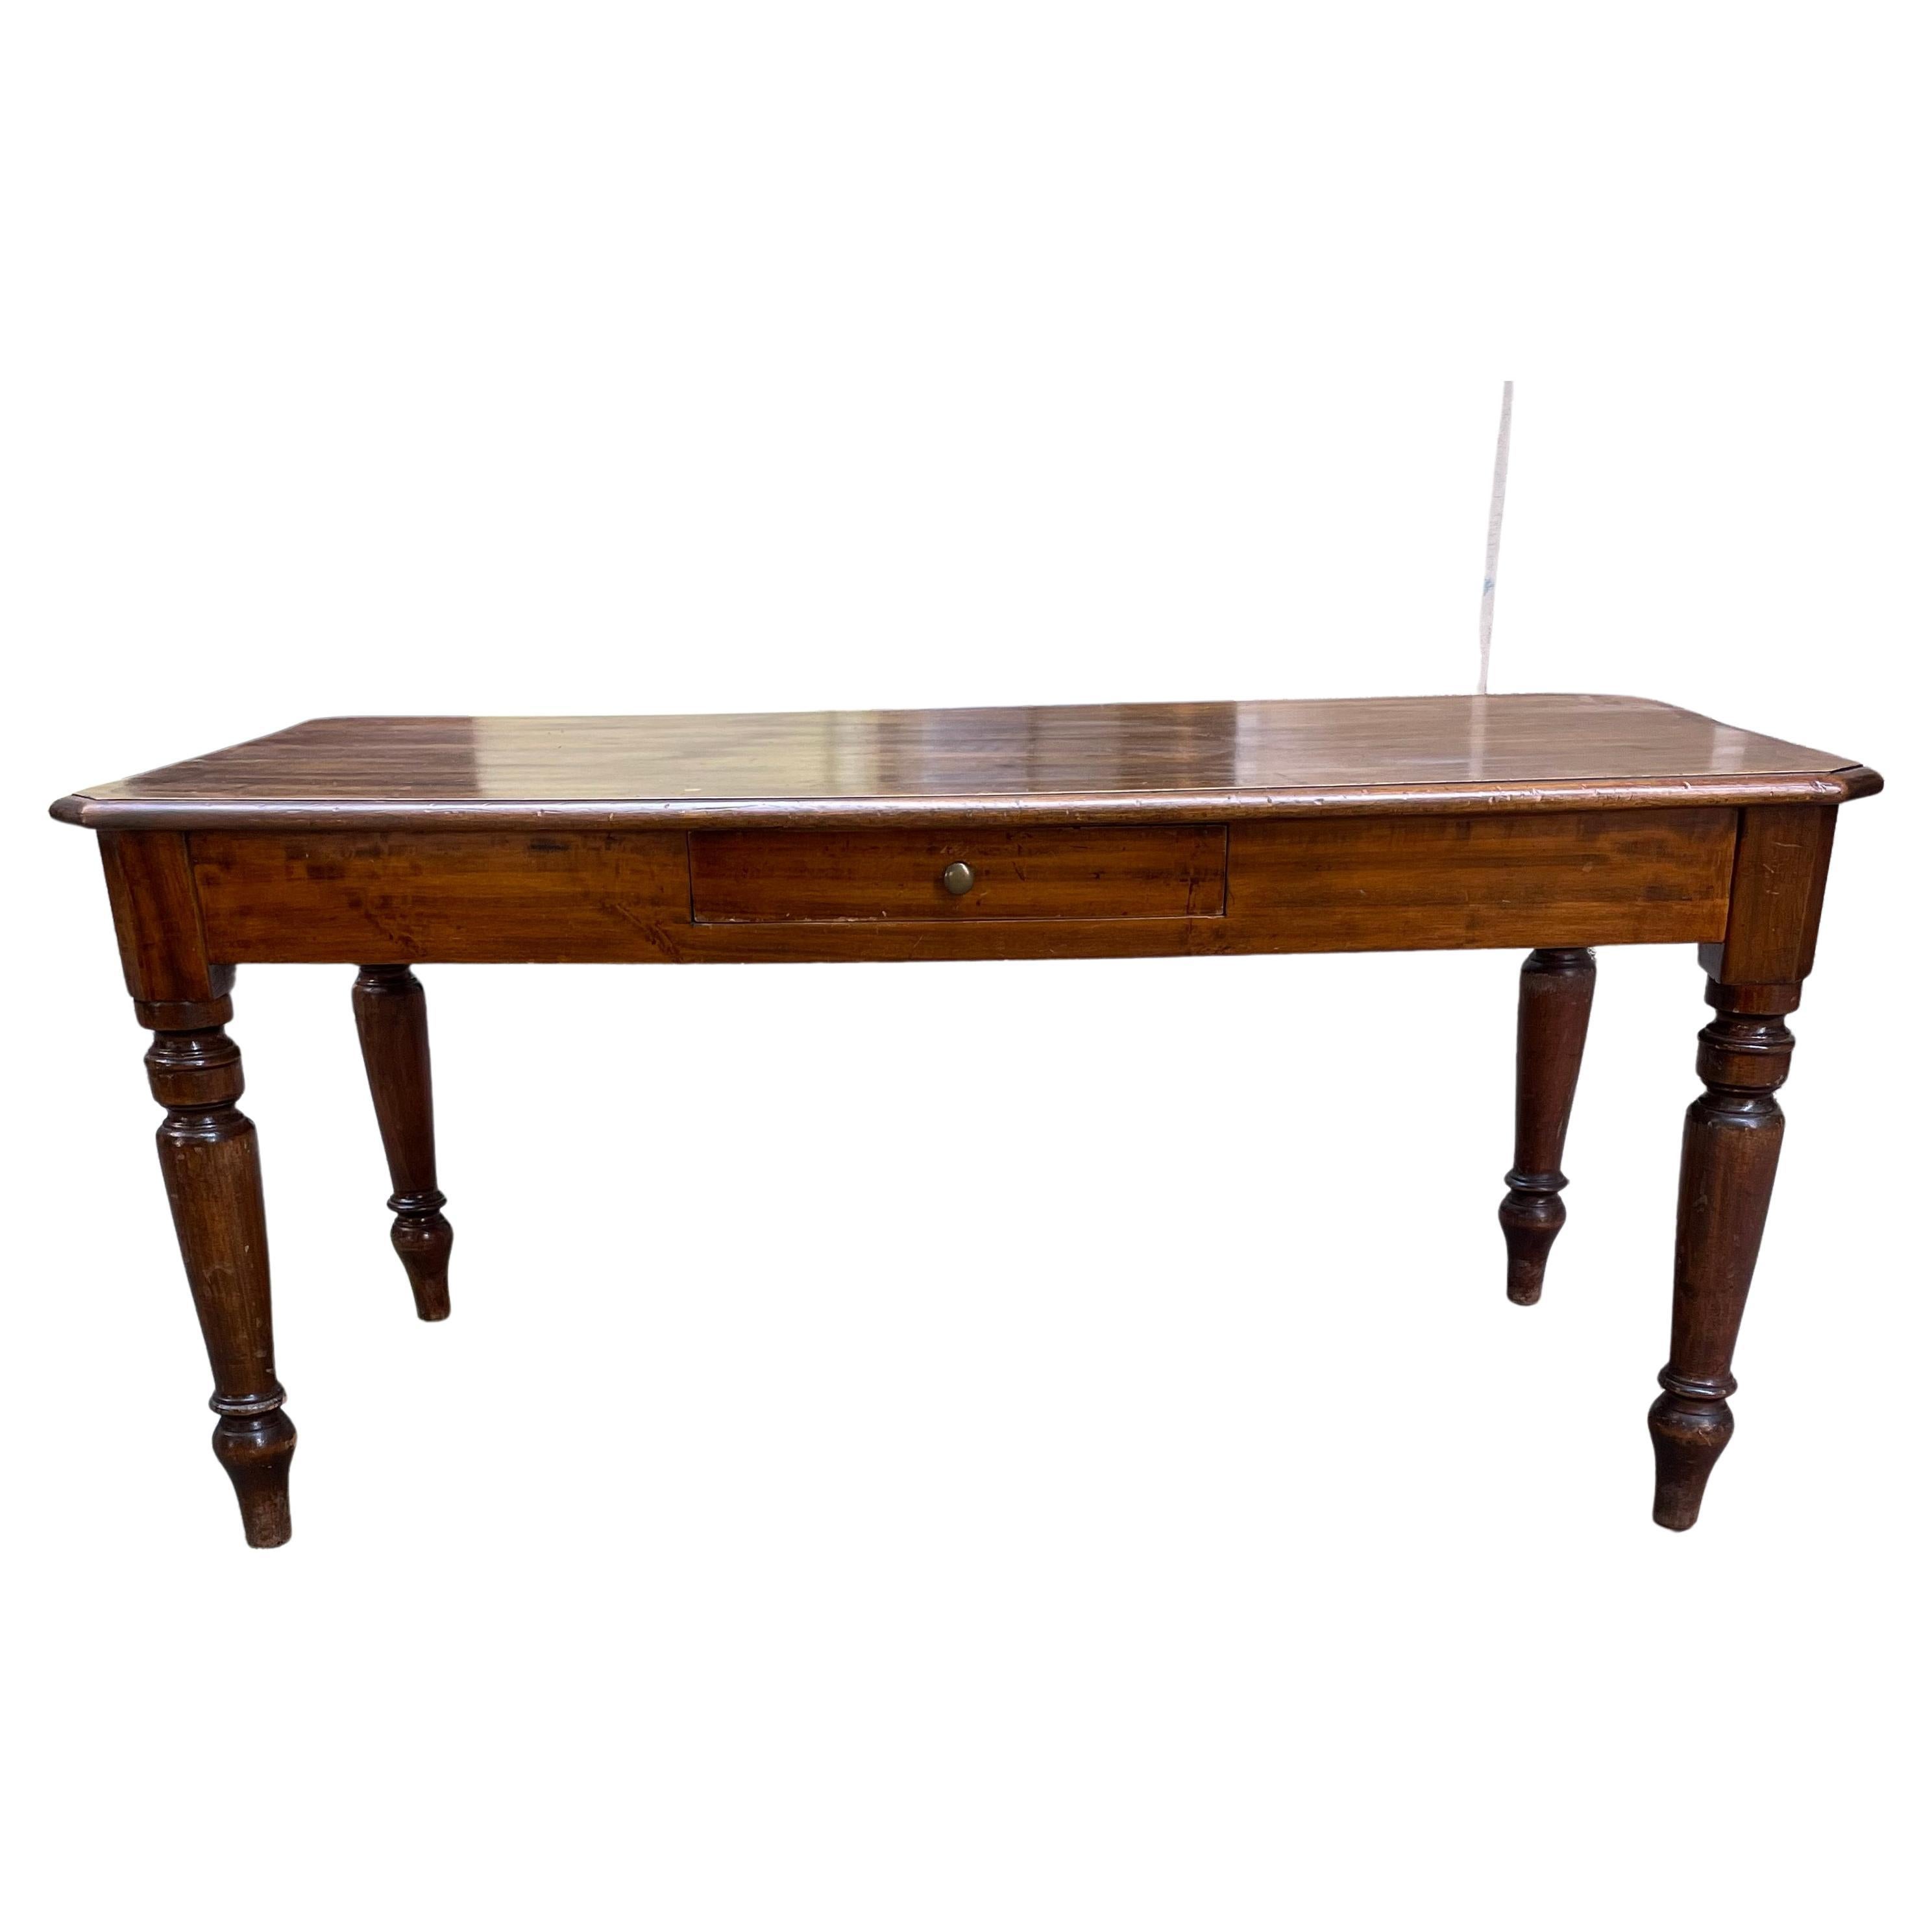 Italienischer lombardischer Esszimmertisch des 19. Jahrhunderts aus massivem Pappelholz, rechteckige Platte mit geformten Kanten, ein  Schublade an der Längsseite, gedrechselte Beine.
Dieser antike italienische Tisch ist in gutem Zustand und stammt